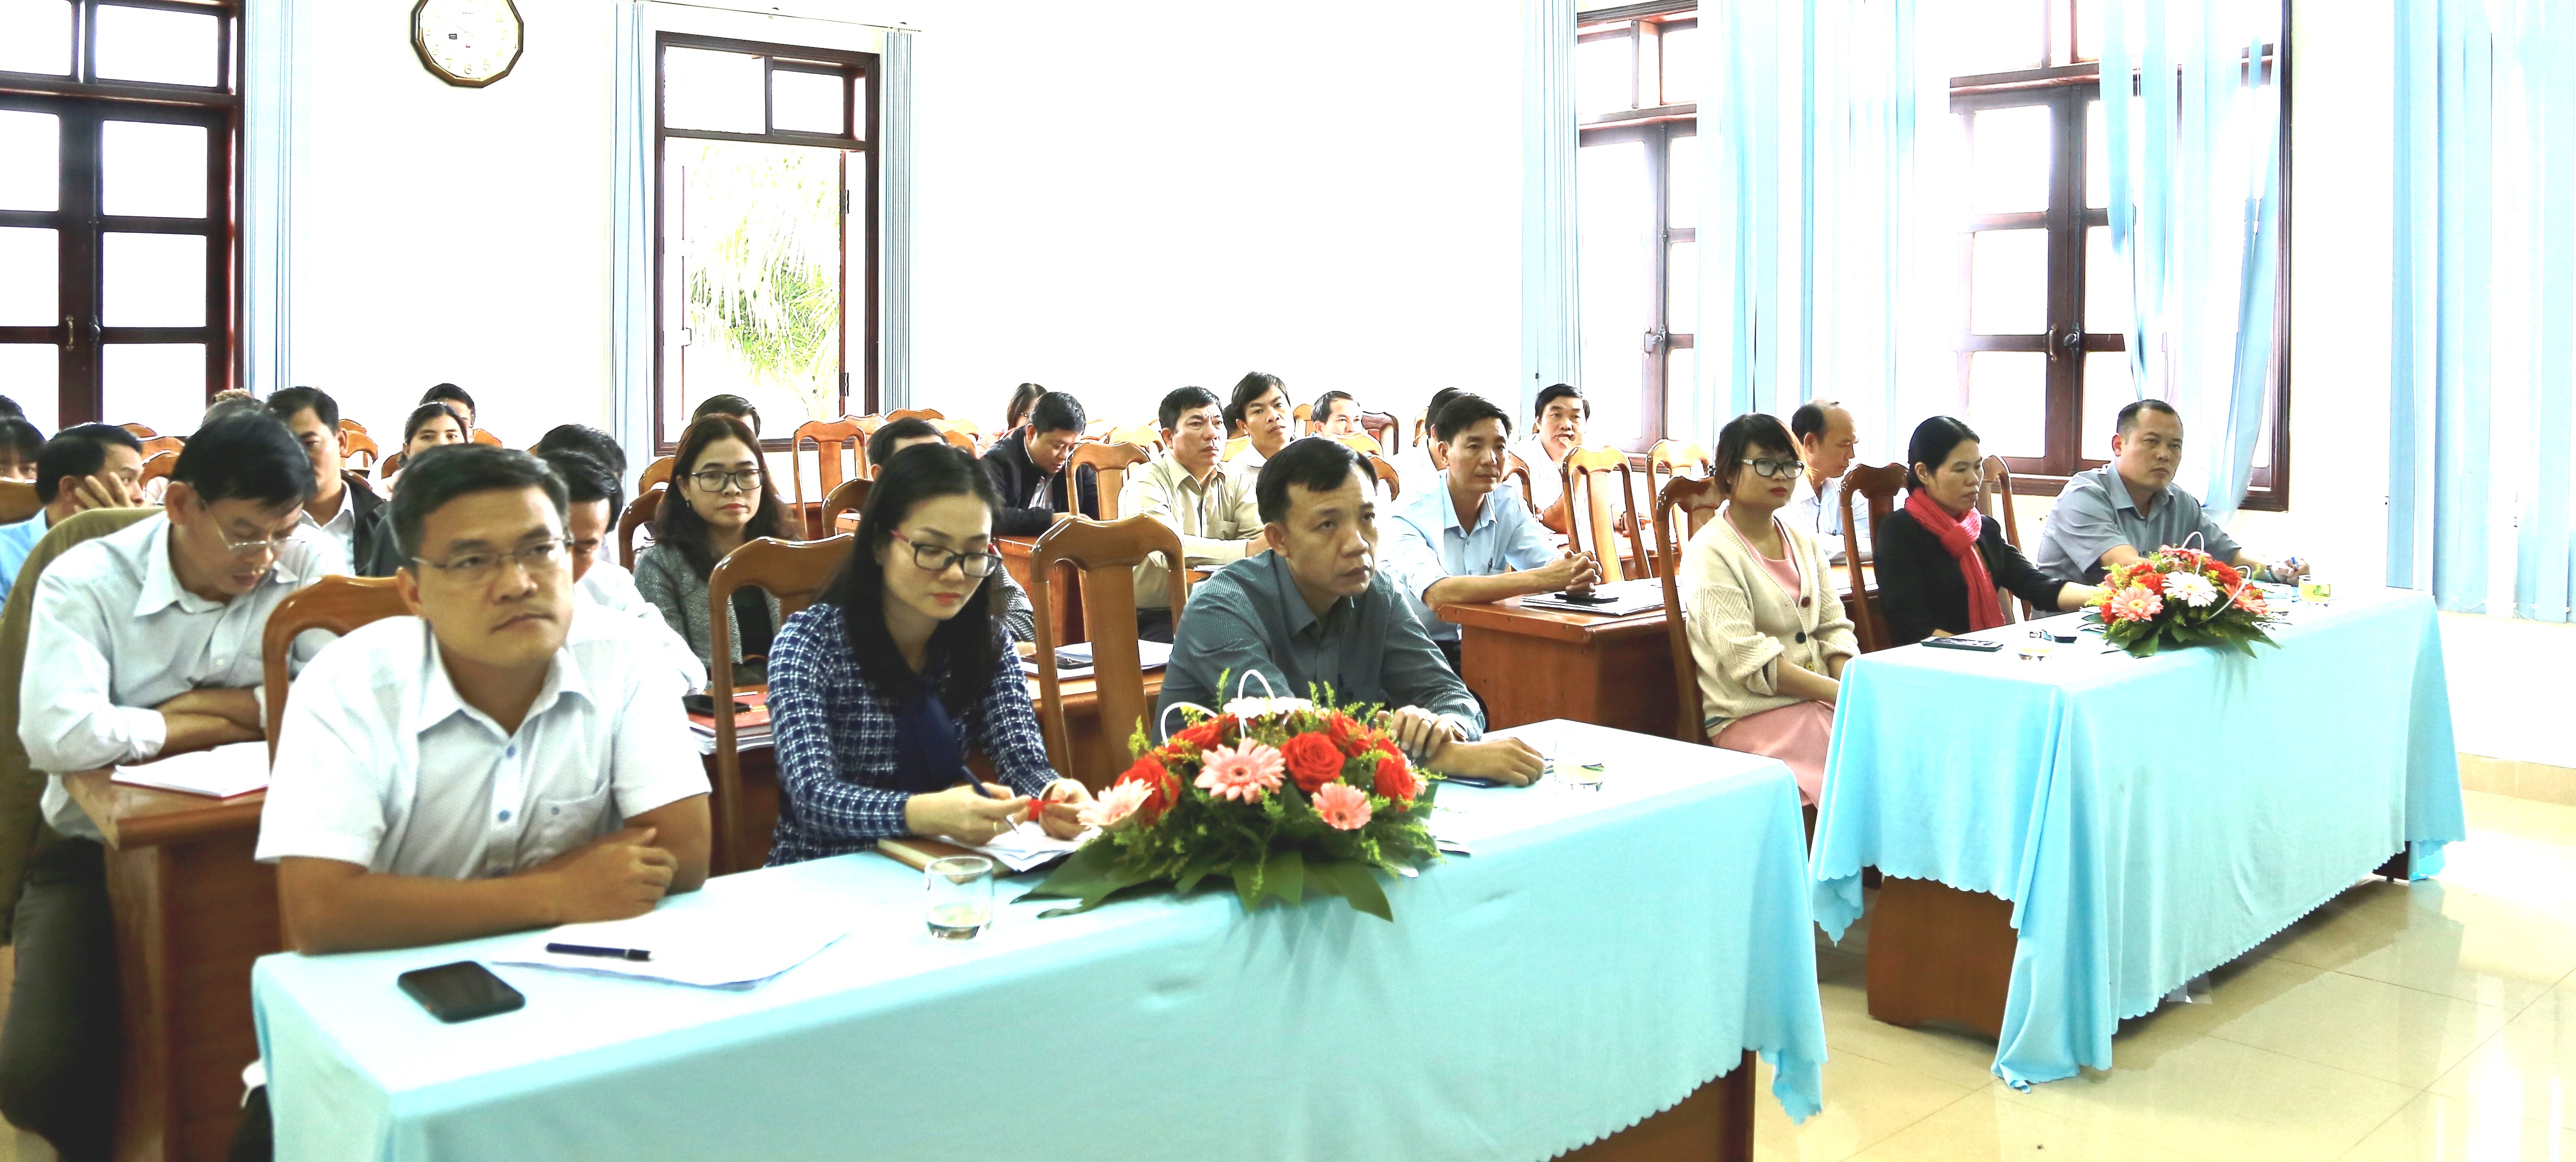 Huyện Cư Kuin: Tổng kết công tác khoa giáo năm 2020, triển khai nhiệm vụ năm 2021